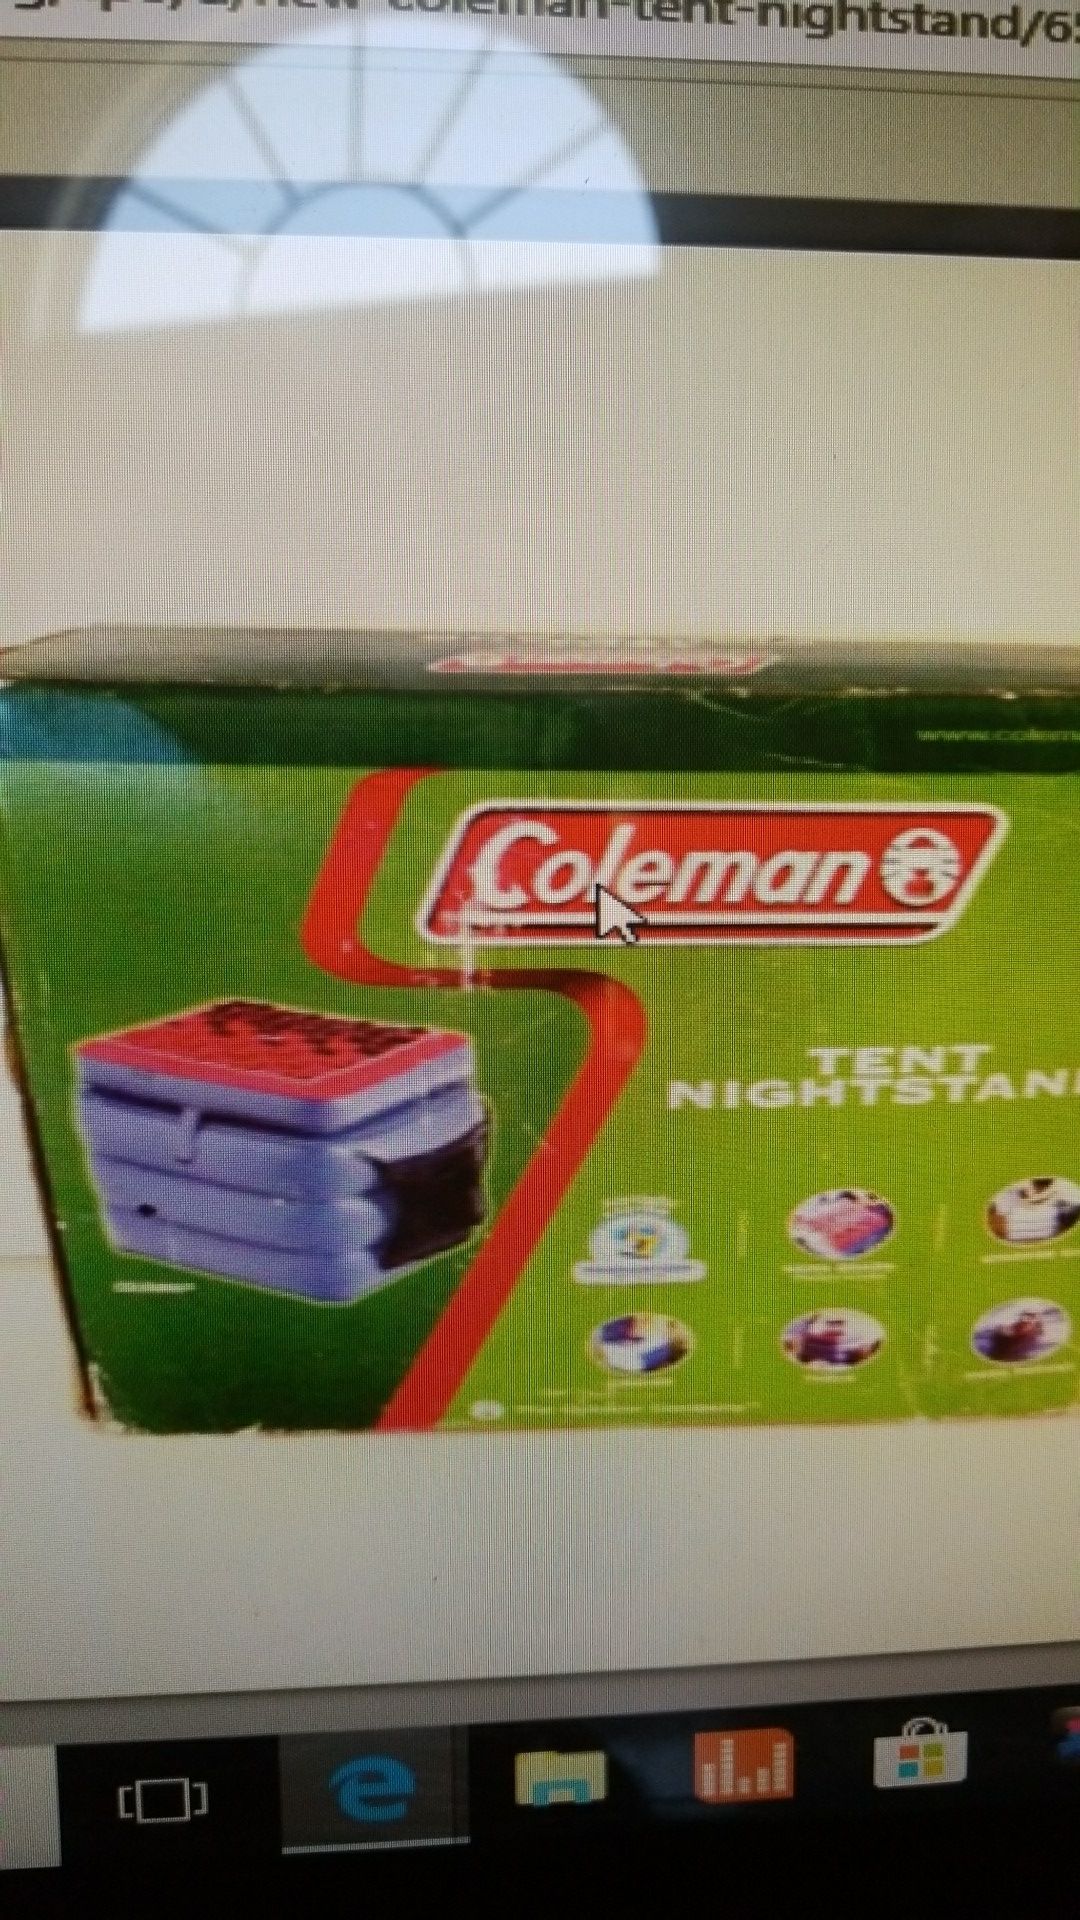 Coleman tent nightstand